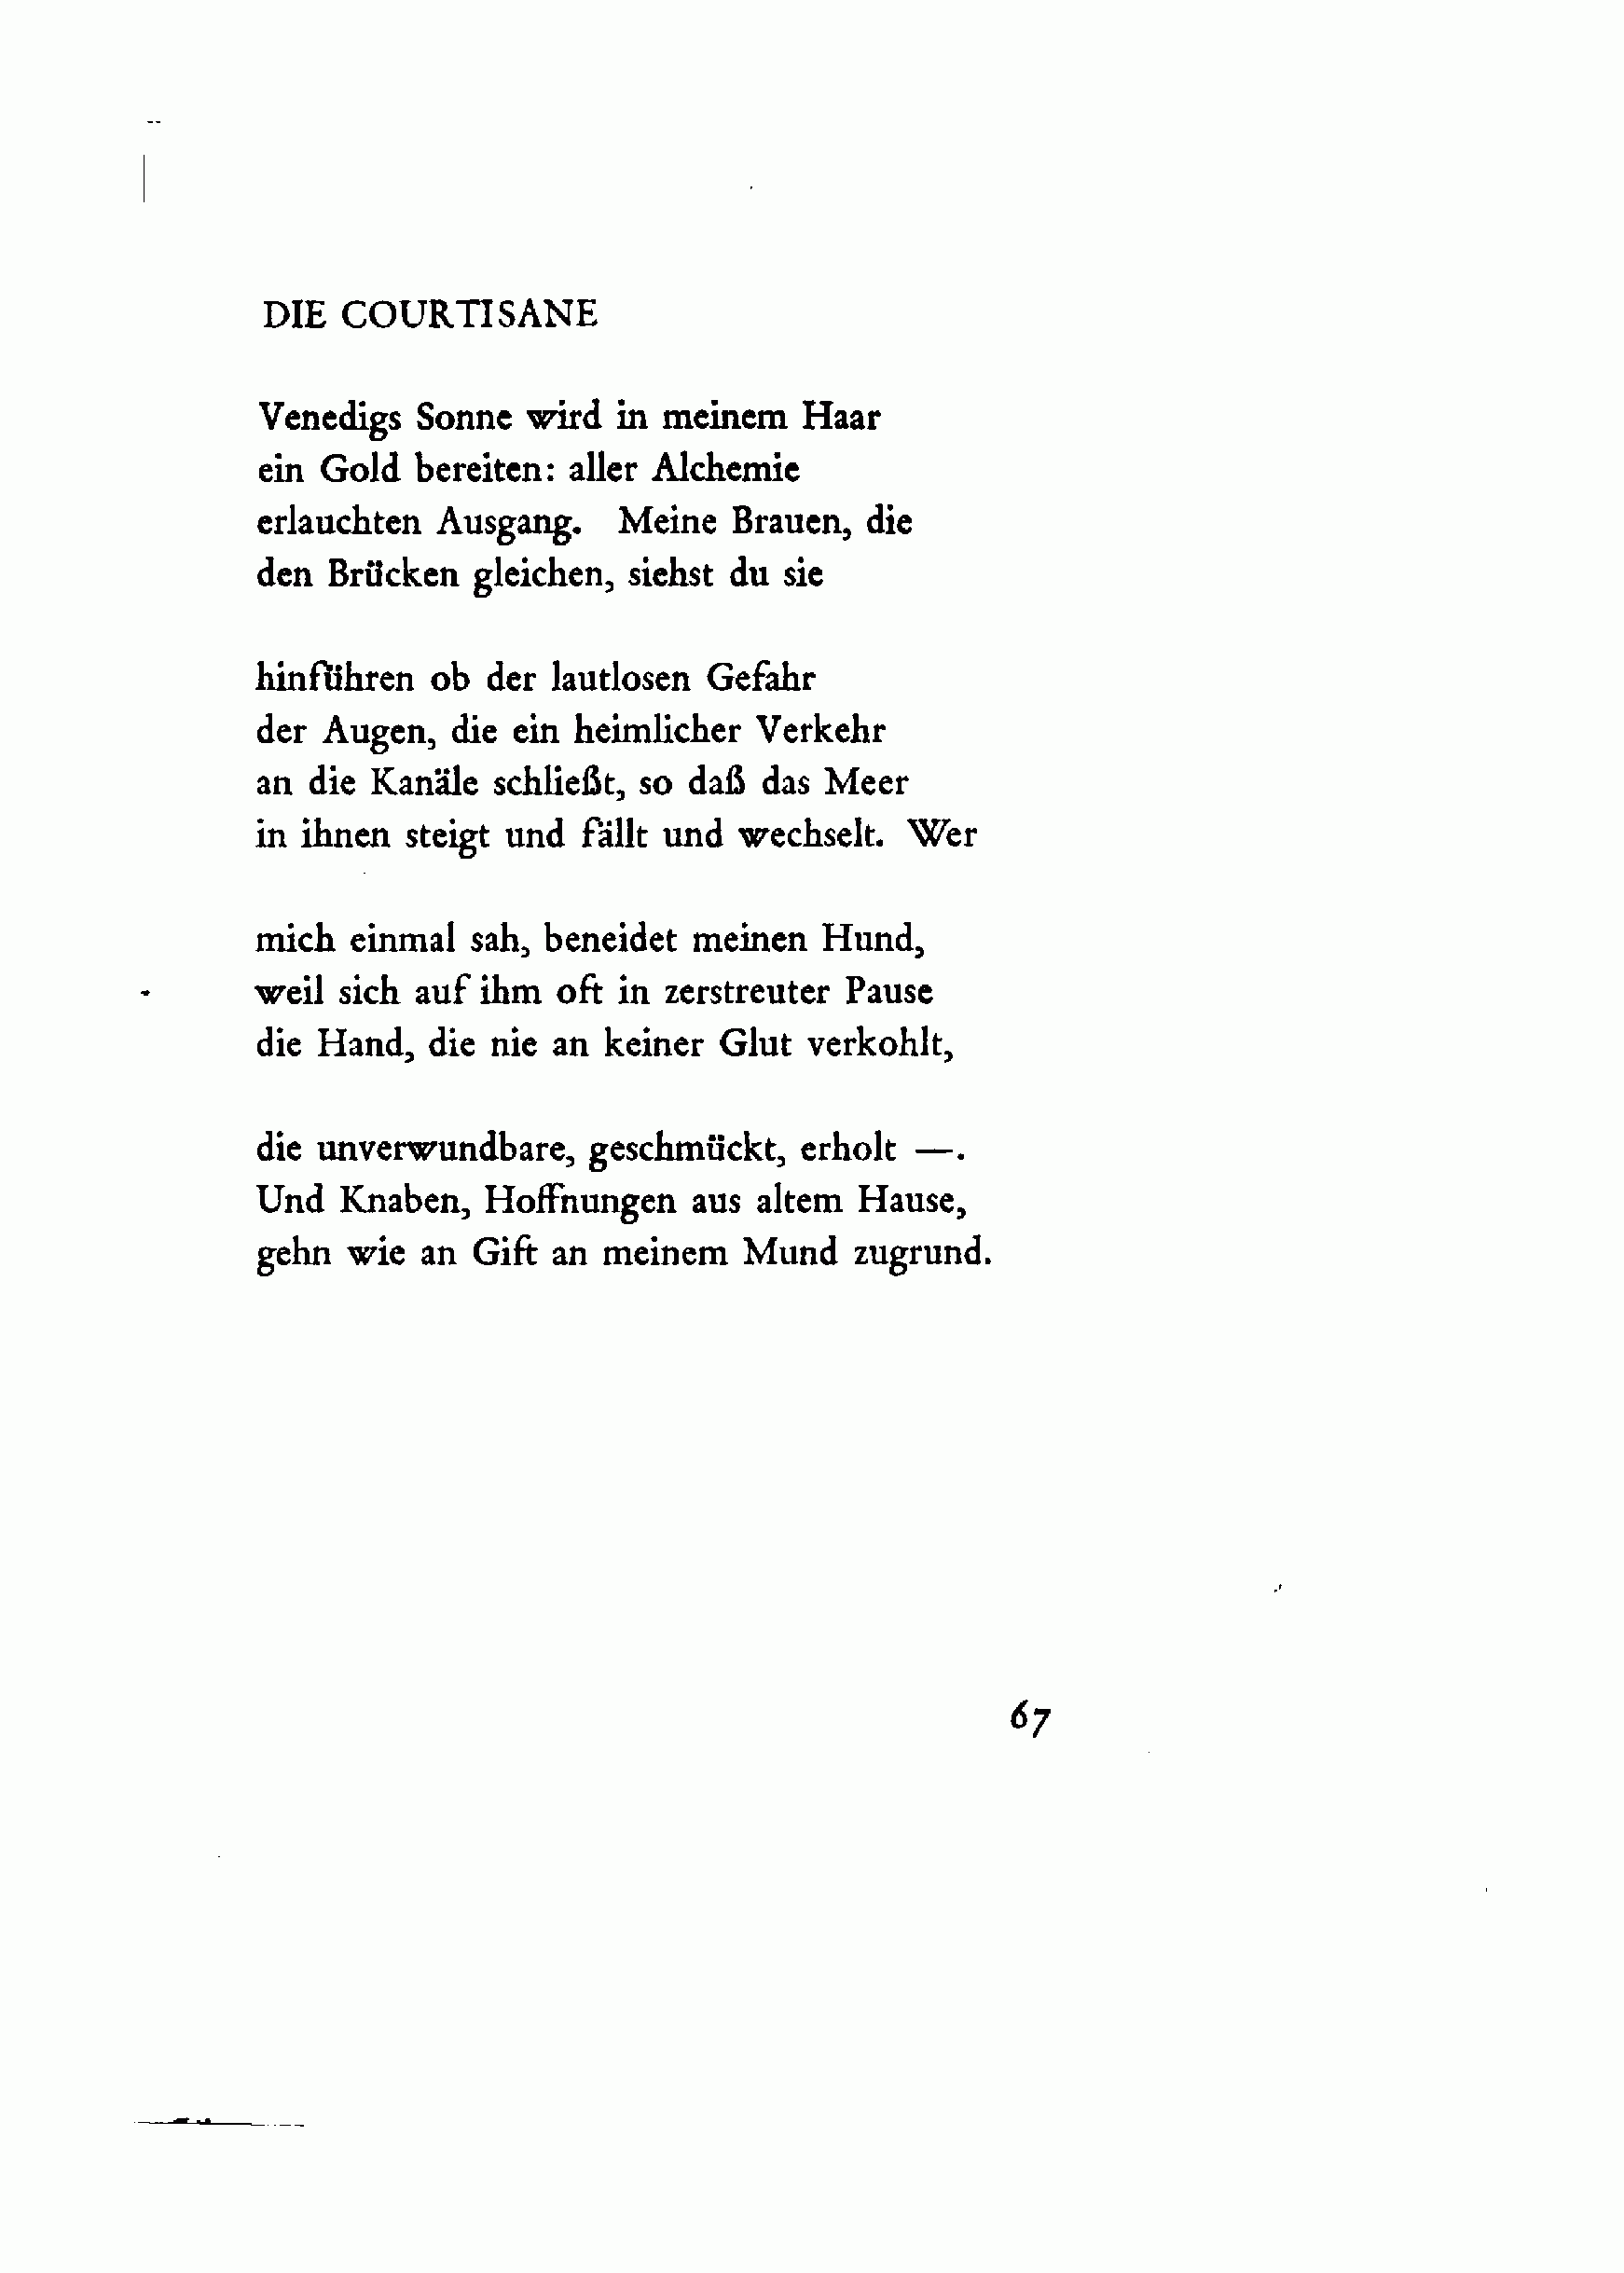 Neue Gedichte (Rilke 1907) 067.gif. 